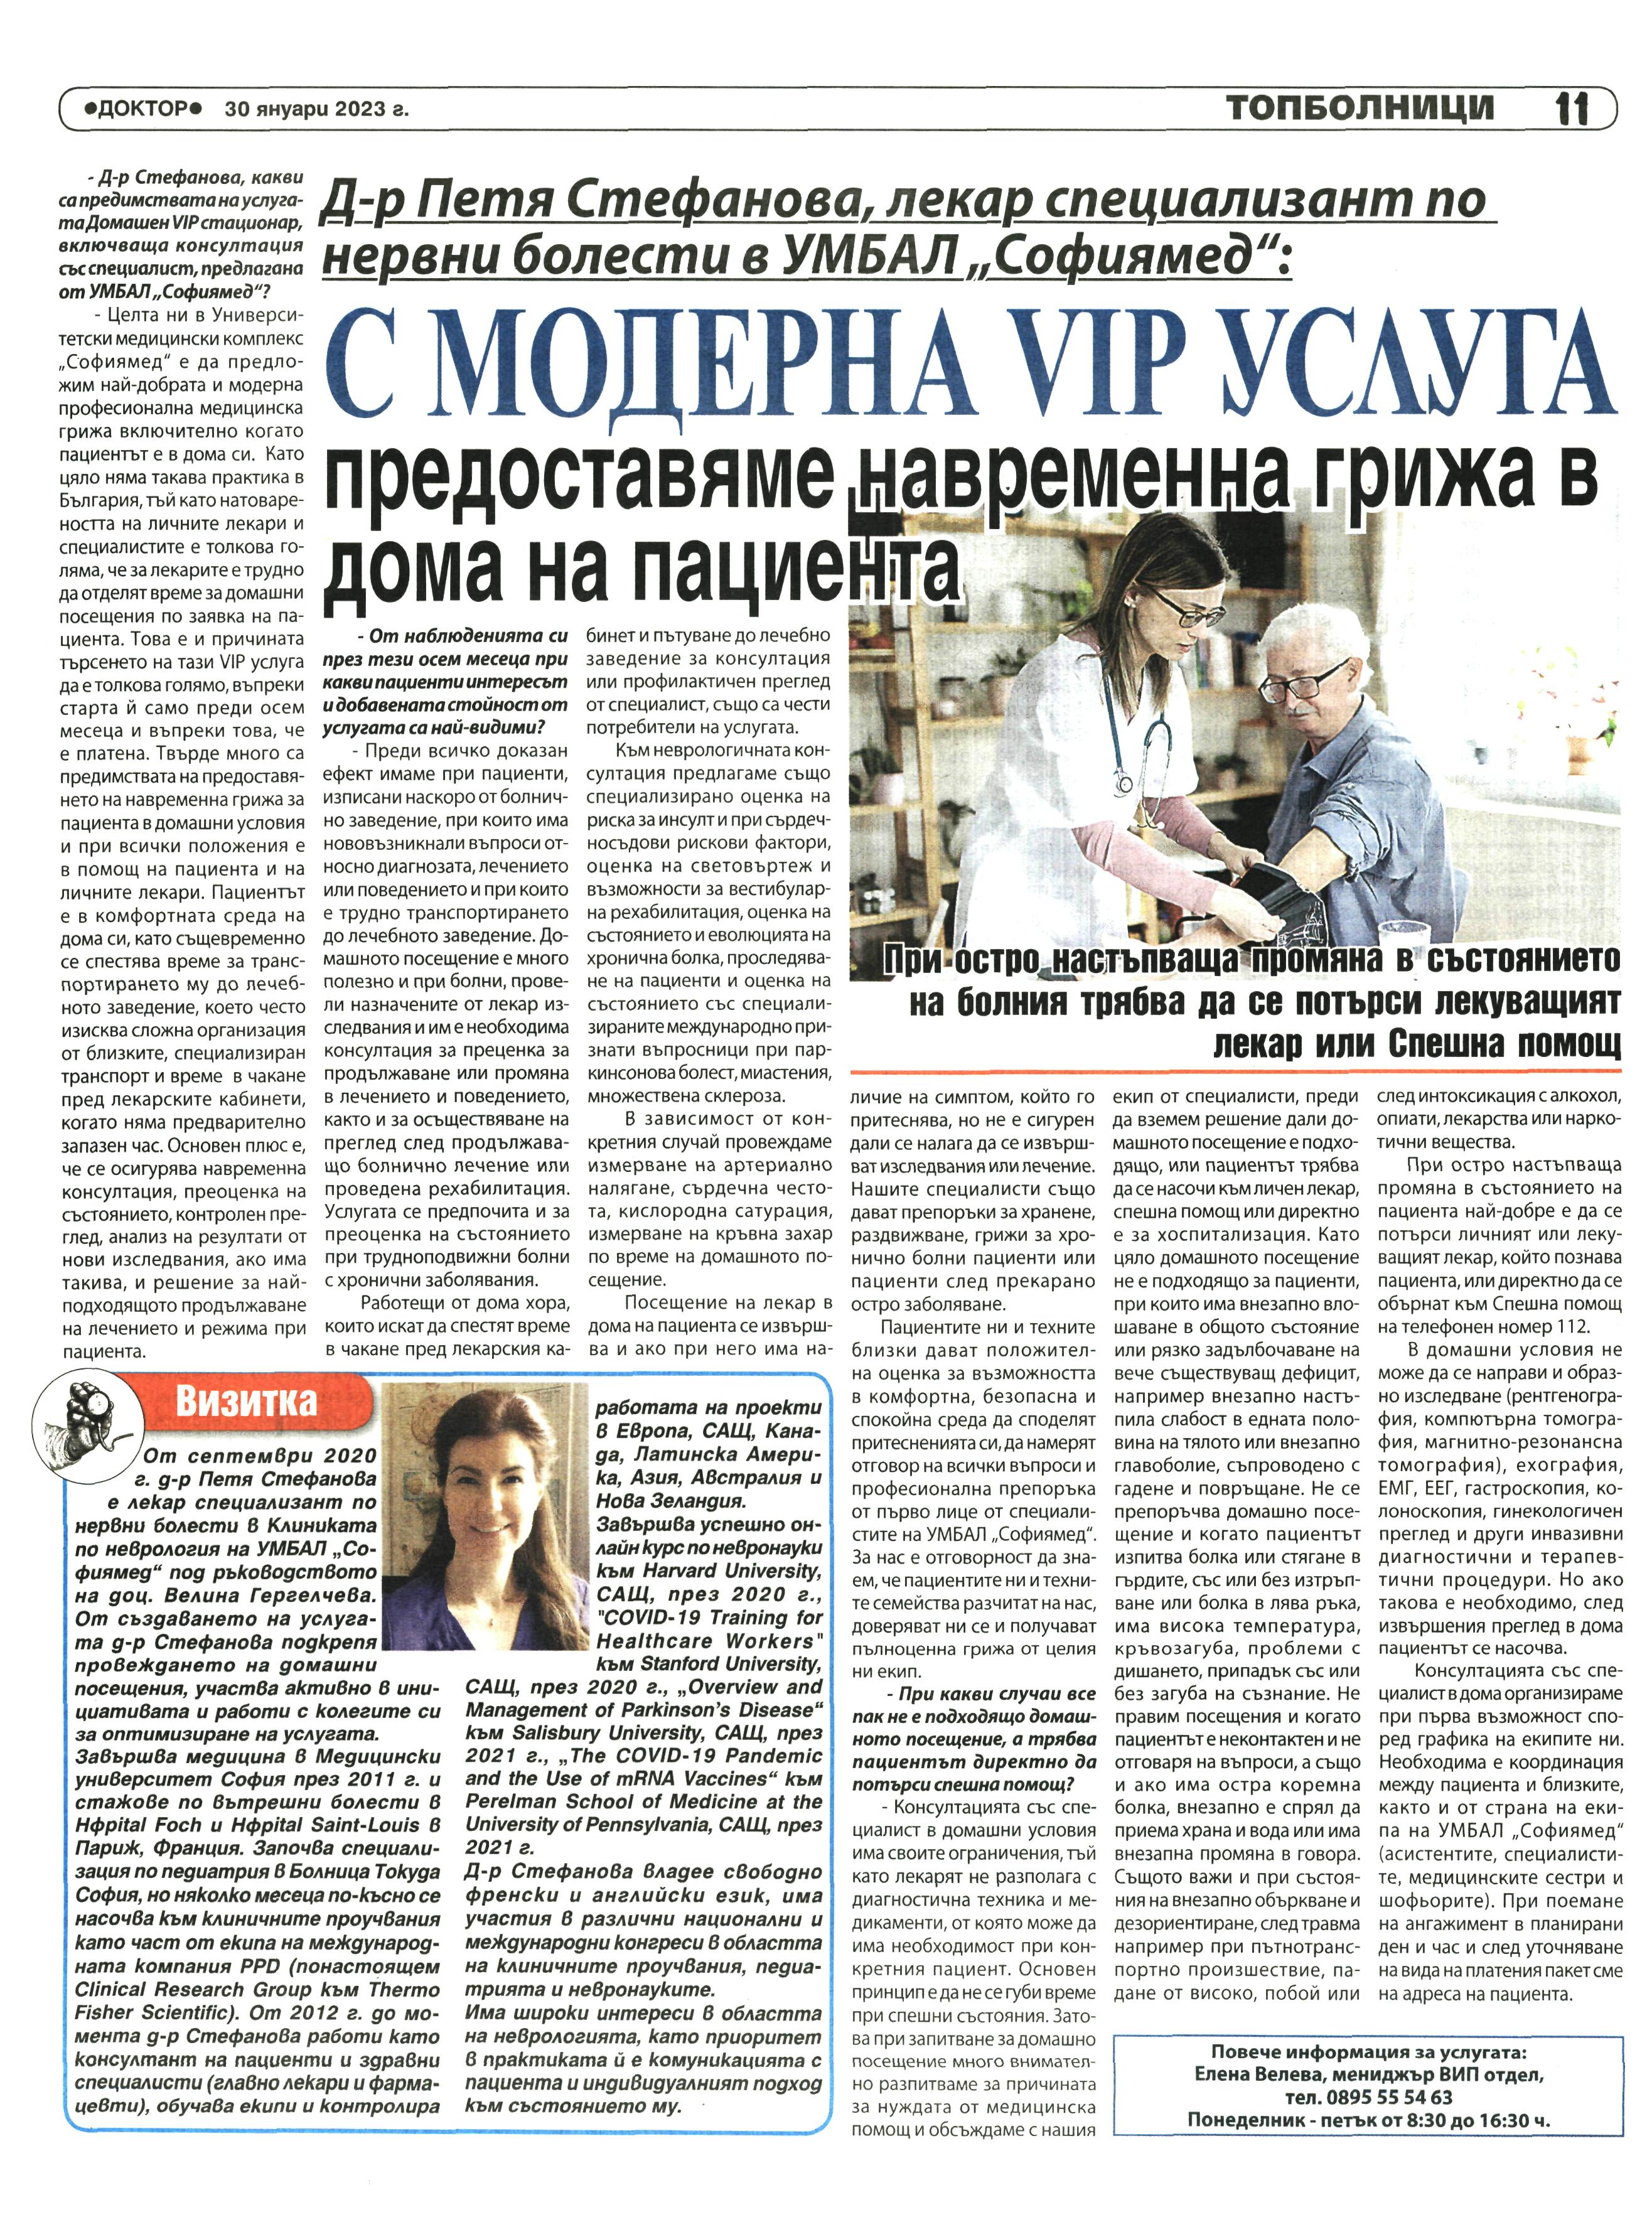 Елена Велева, мениджър VIP отдел: Във VIP  сектора ни пациентите се лекуват в луксозни и модерни условия